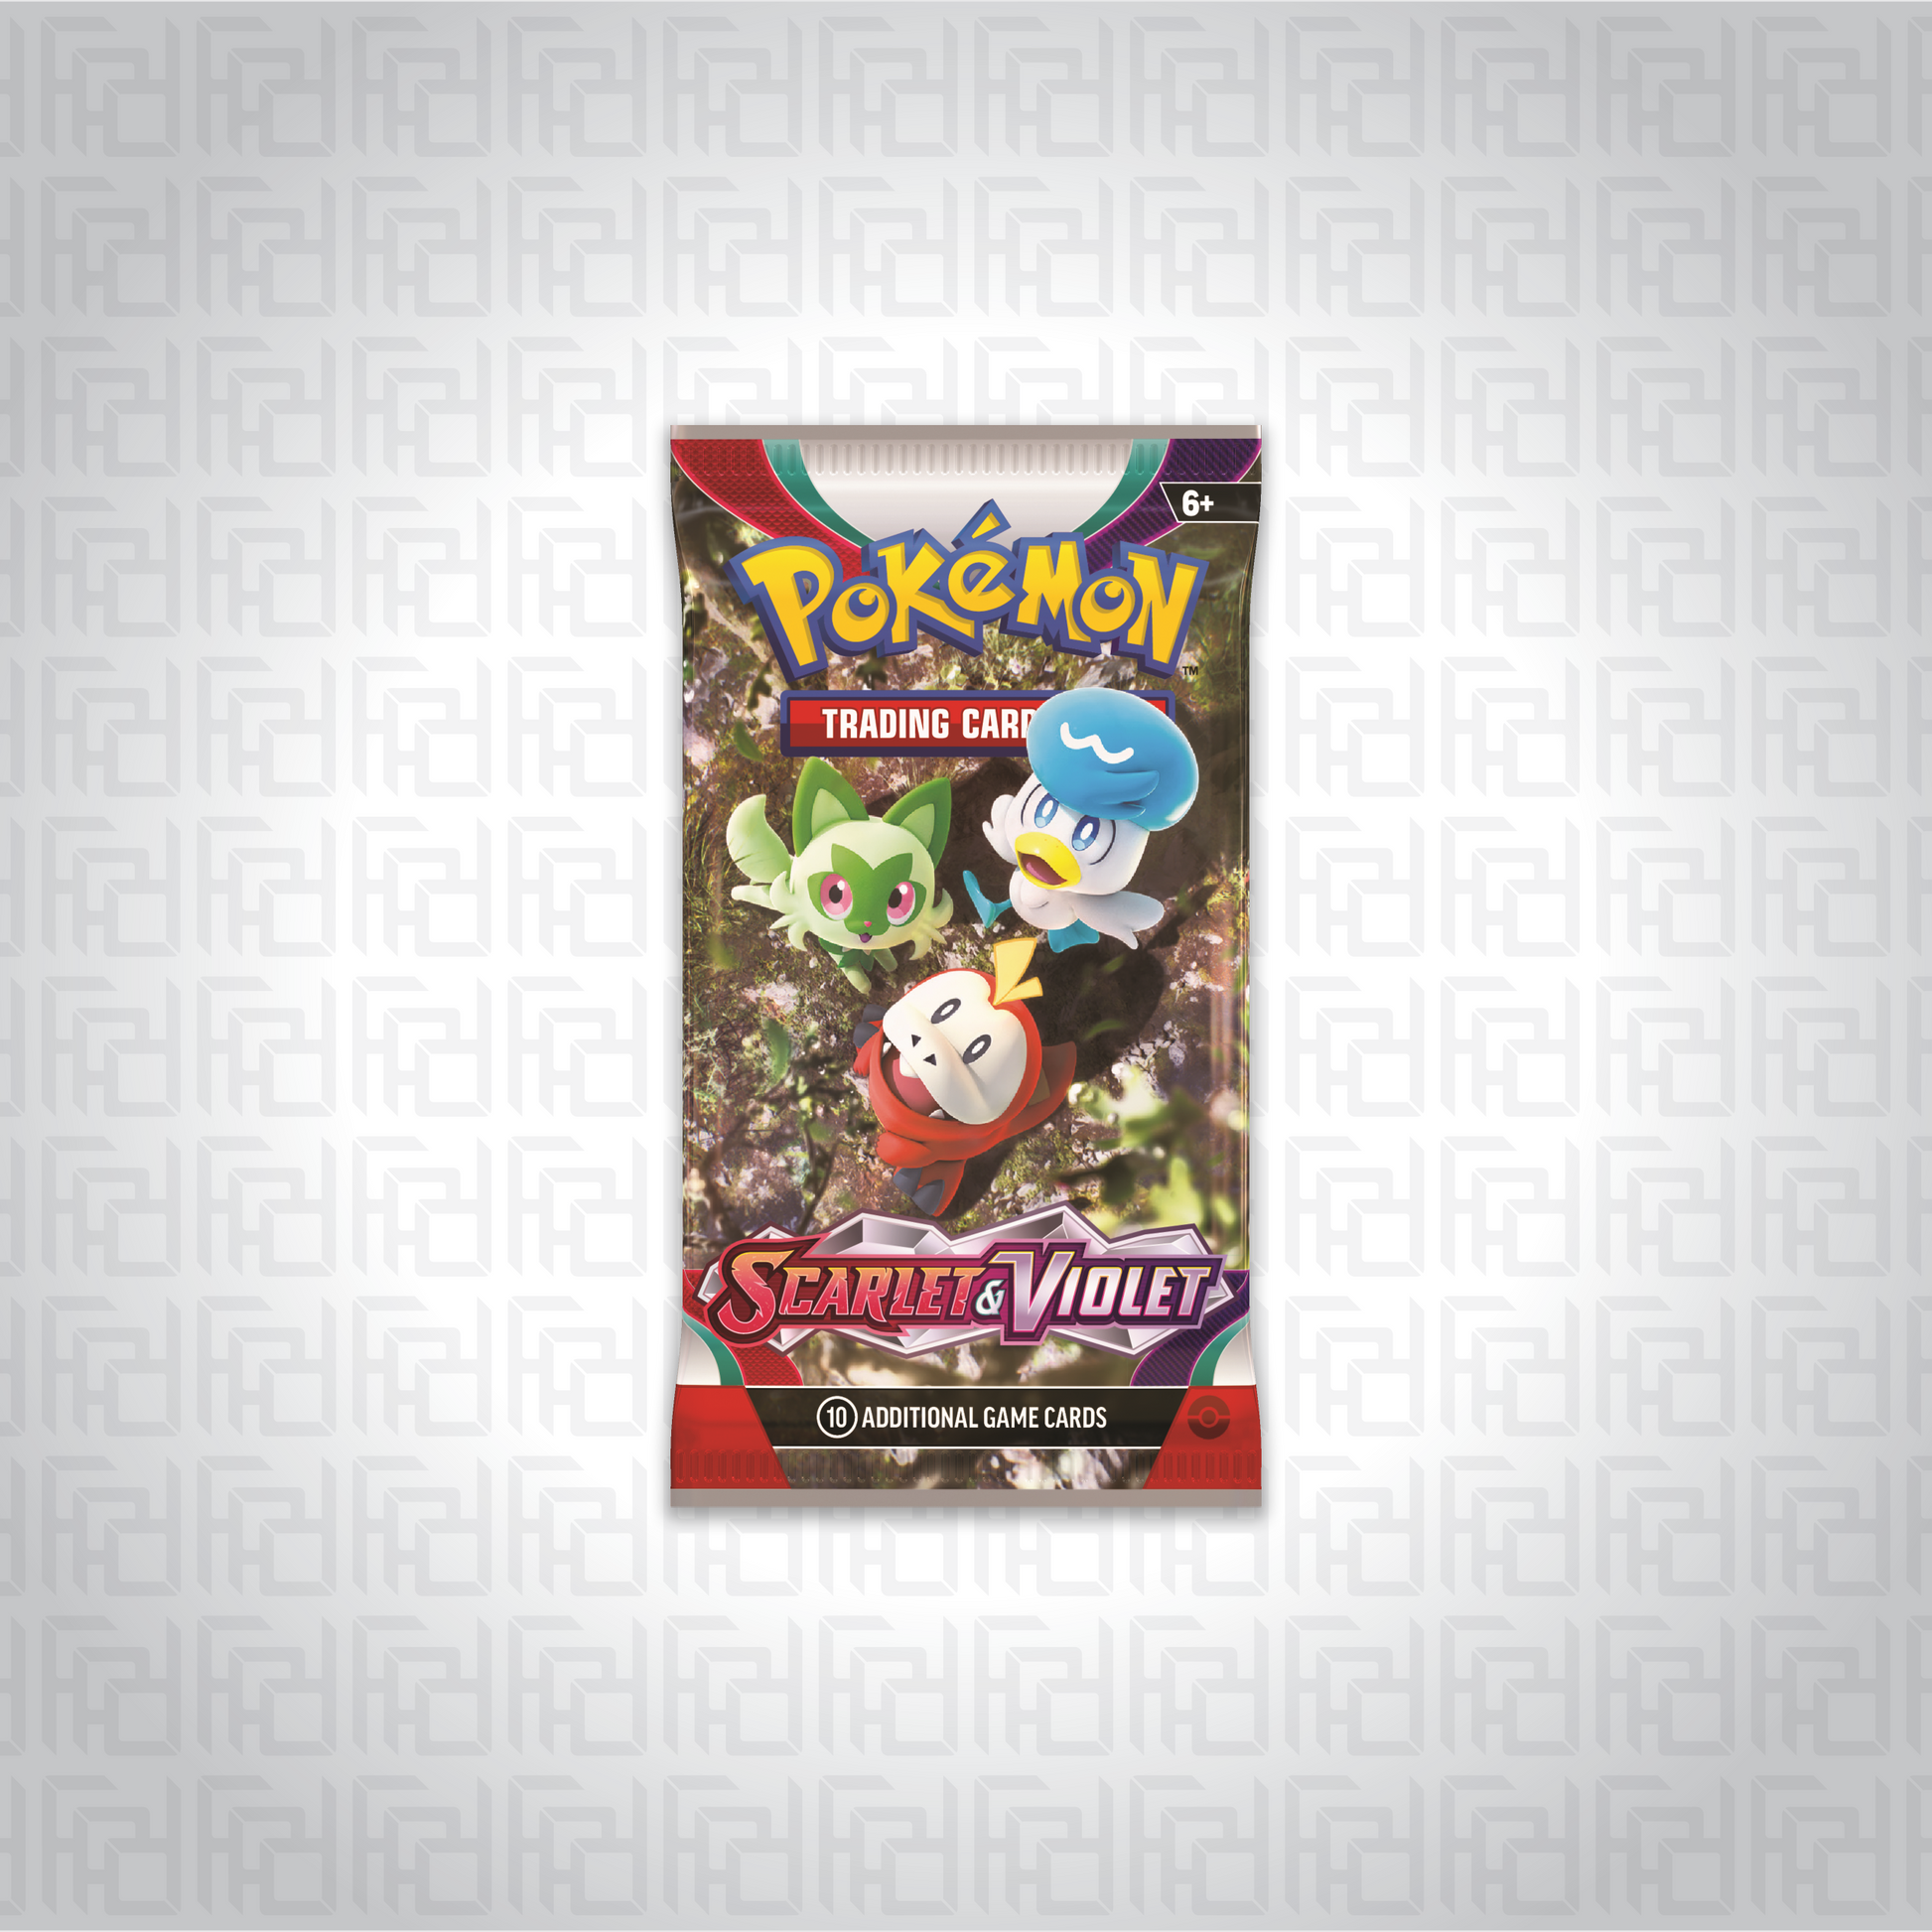 Pokemon TCG: Scarlet & Violet booster pack